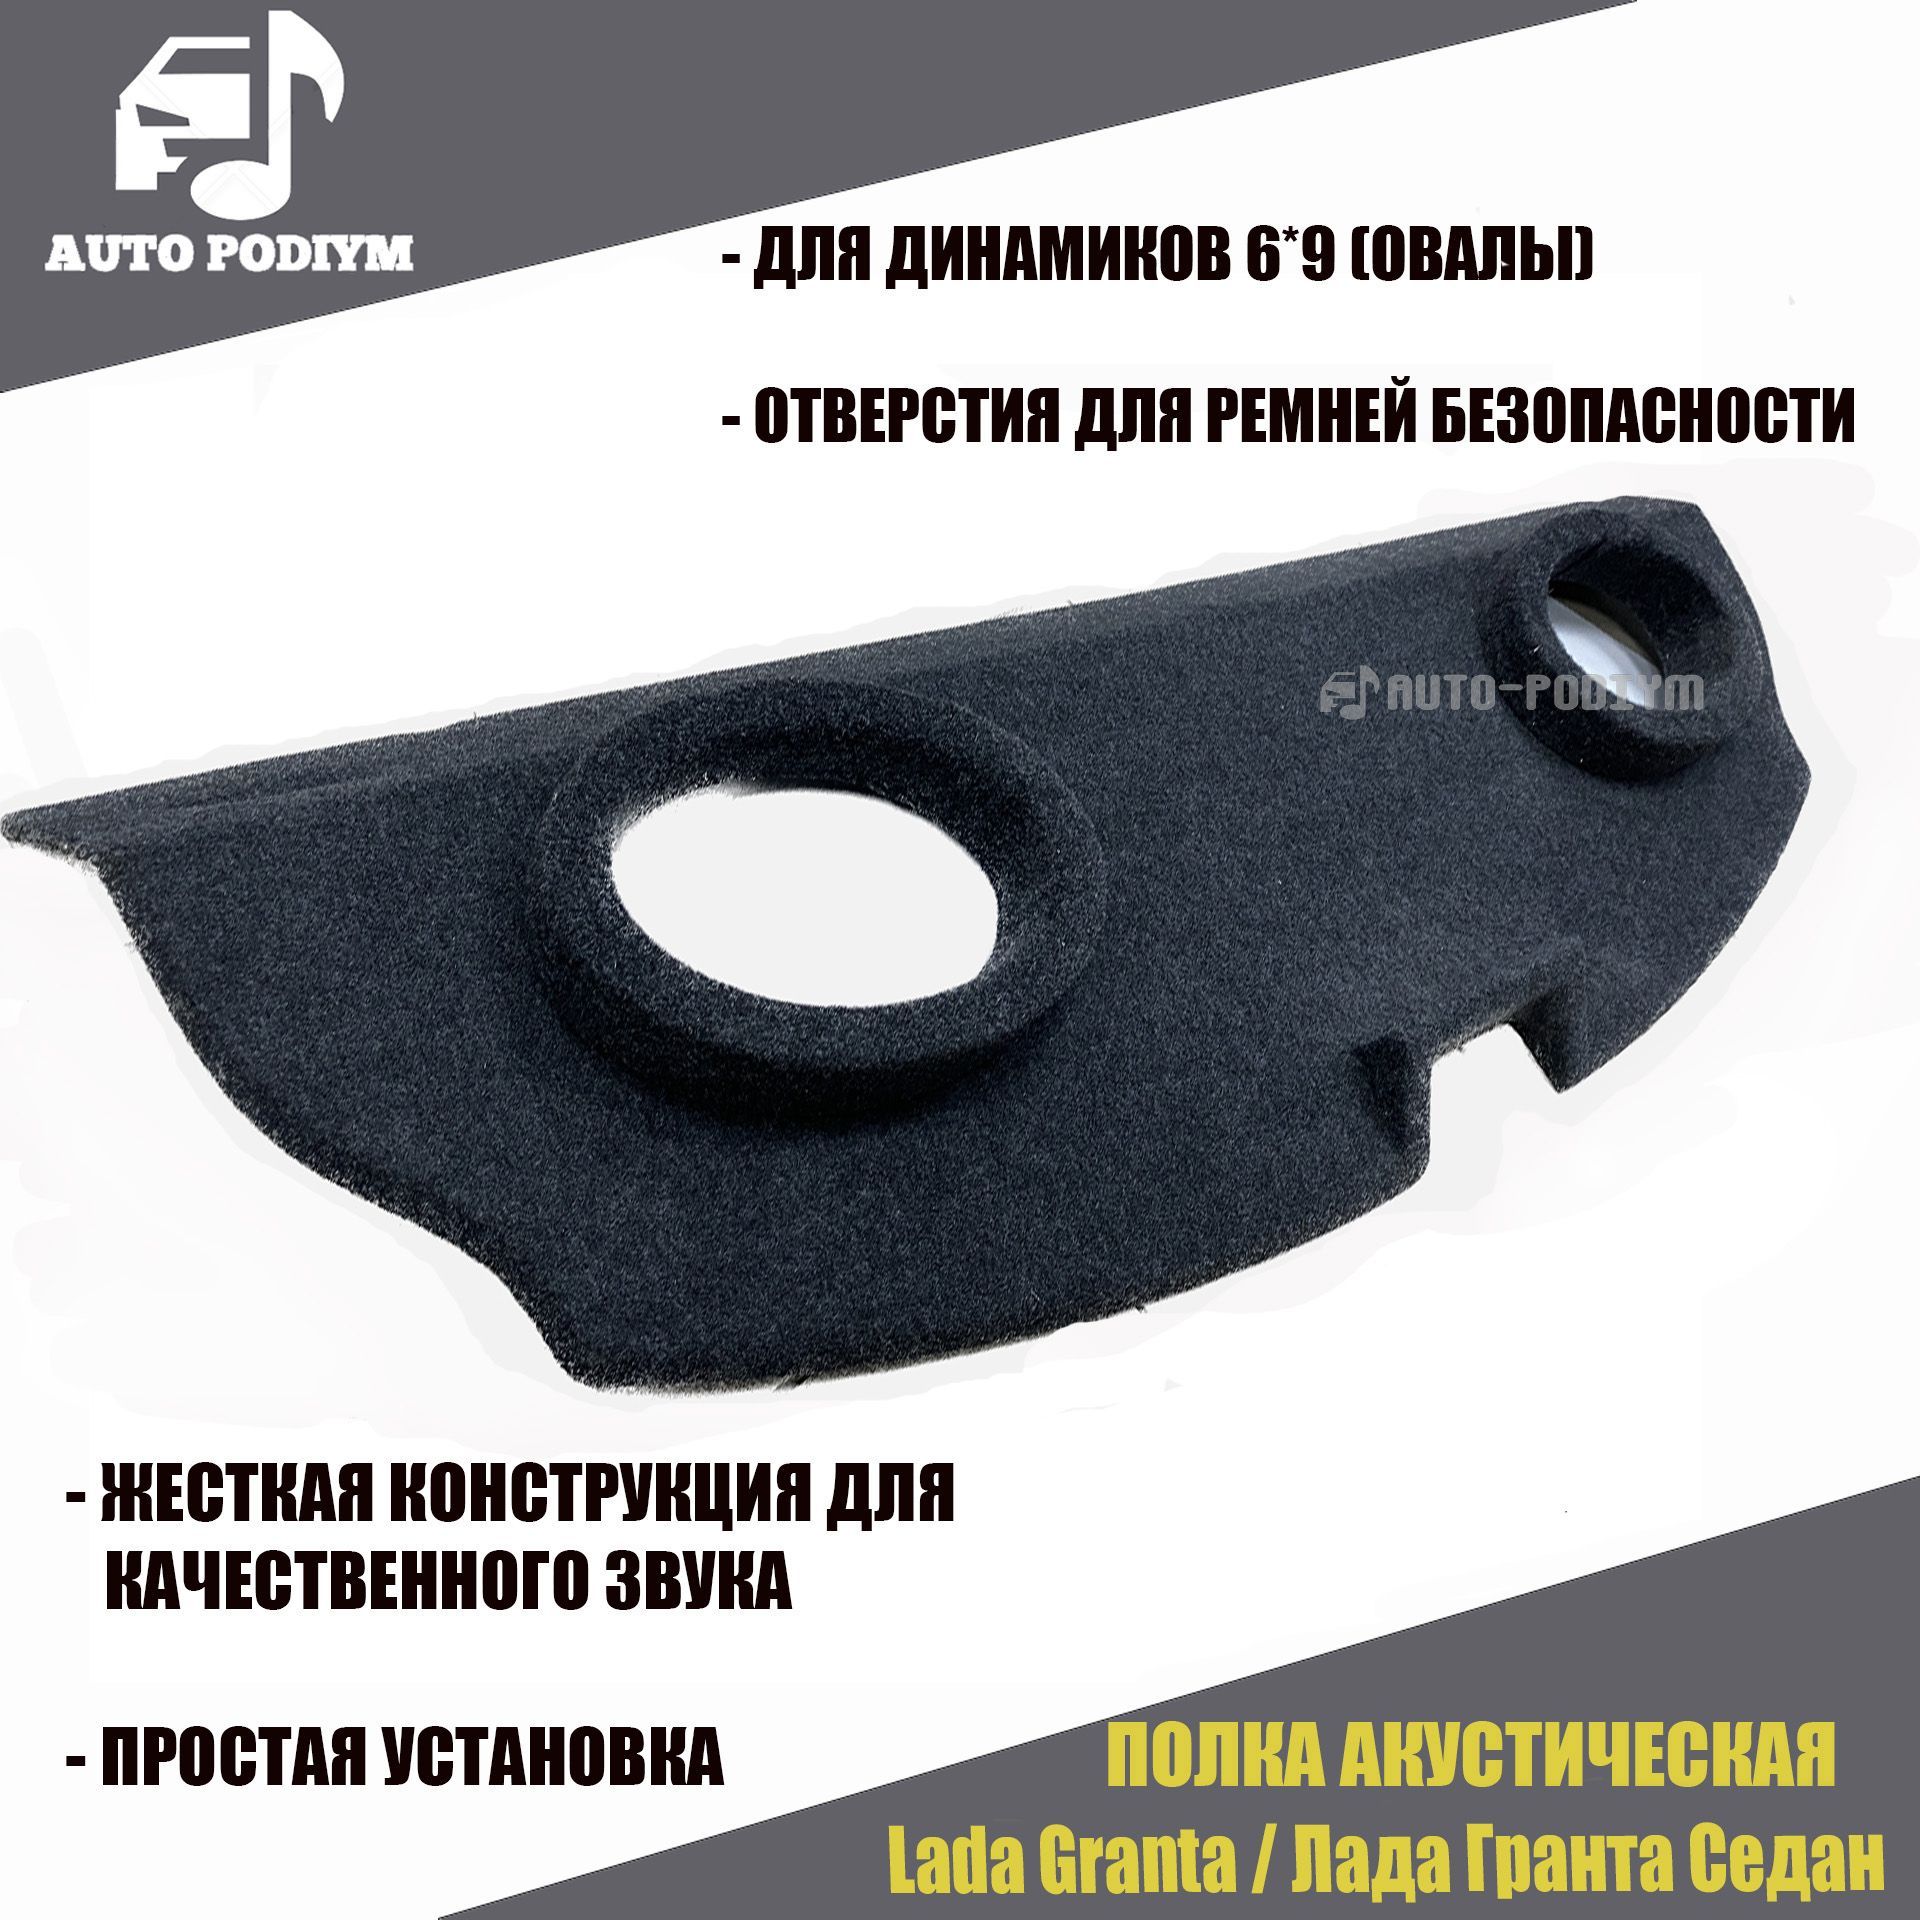 Купить оптом акустические полки на LADA GRANTA седан (модификация 1) | VS-AVTO тюнинг из Тольятти